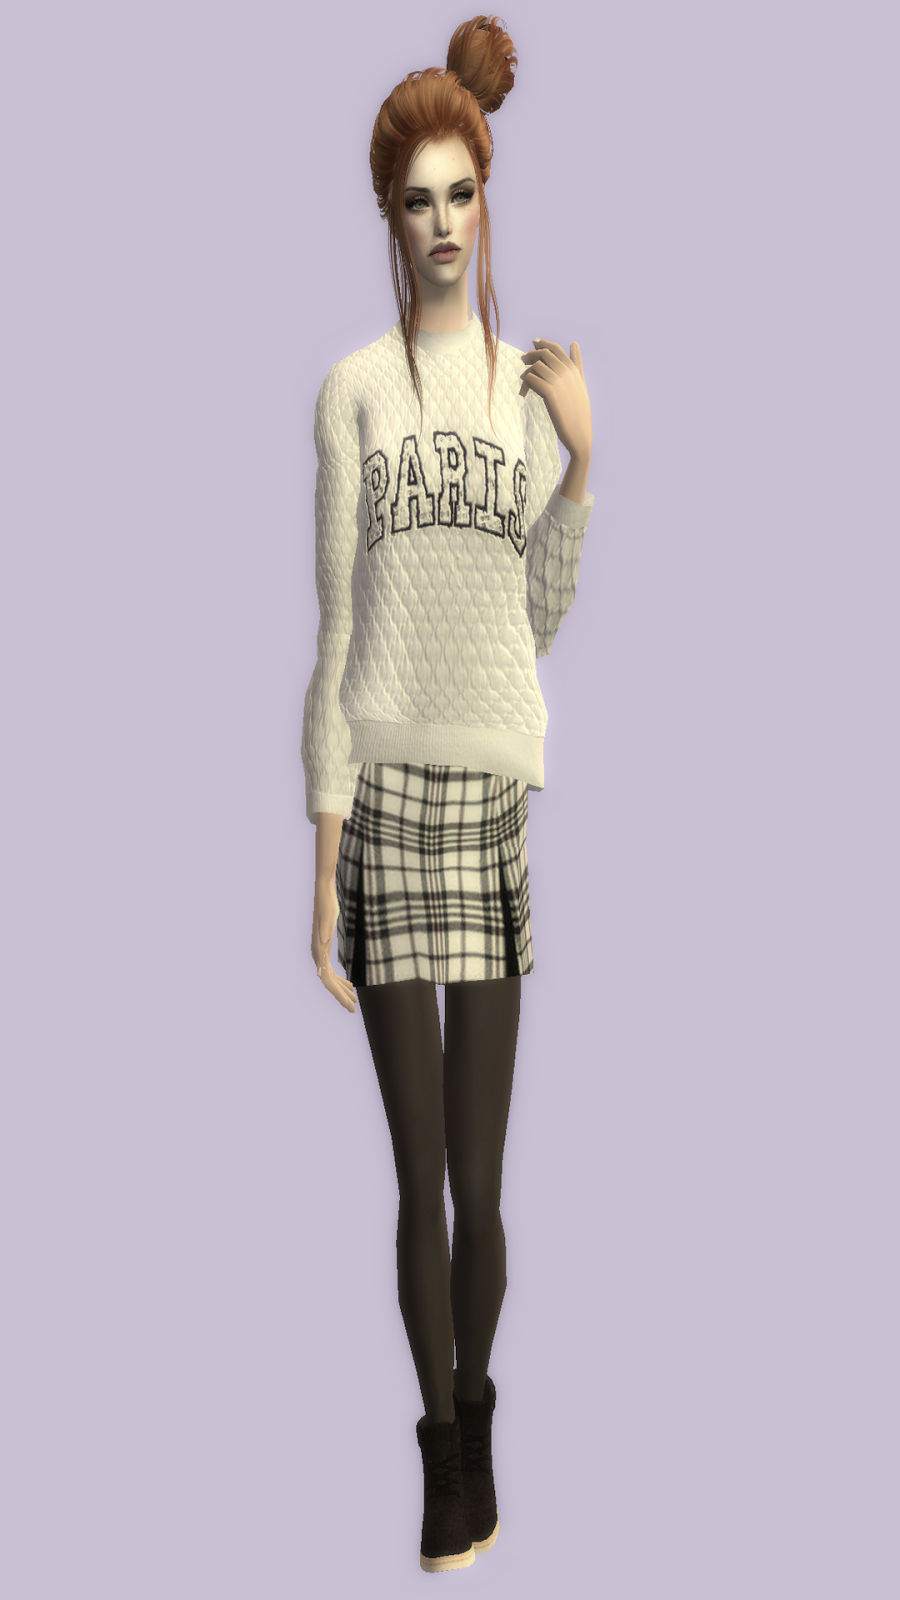 sims -  The Sims 2. Женская одежда: повседневная. Часть 3. - Страница 44 21-AC